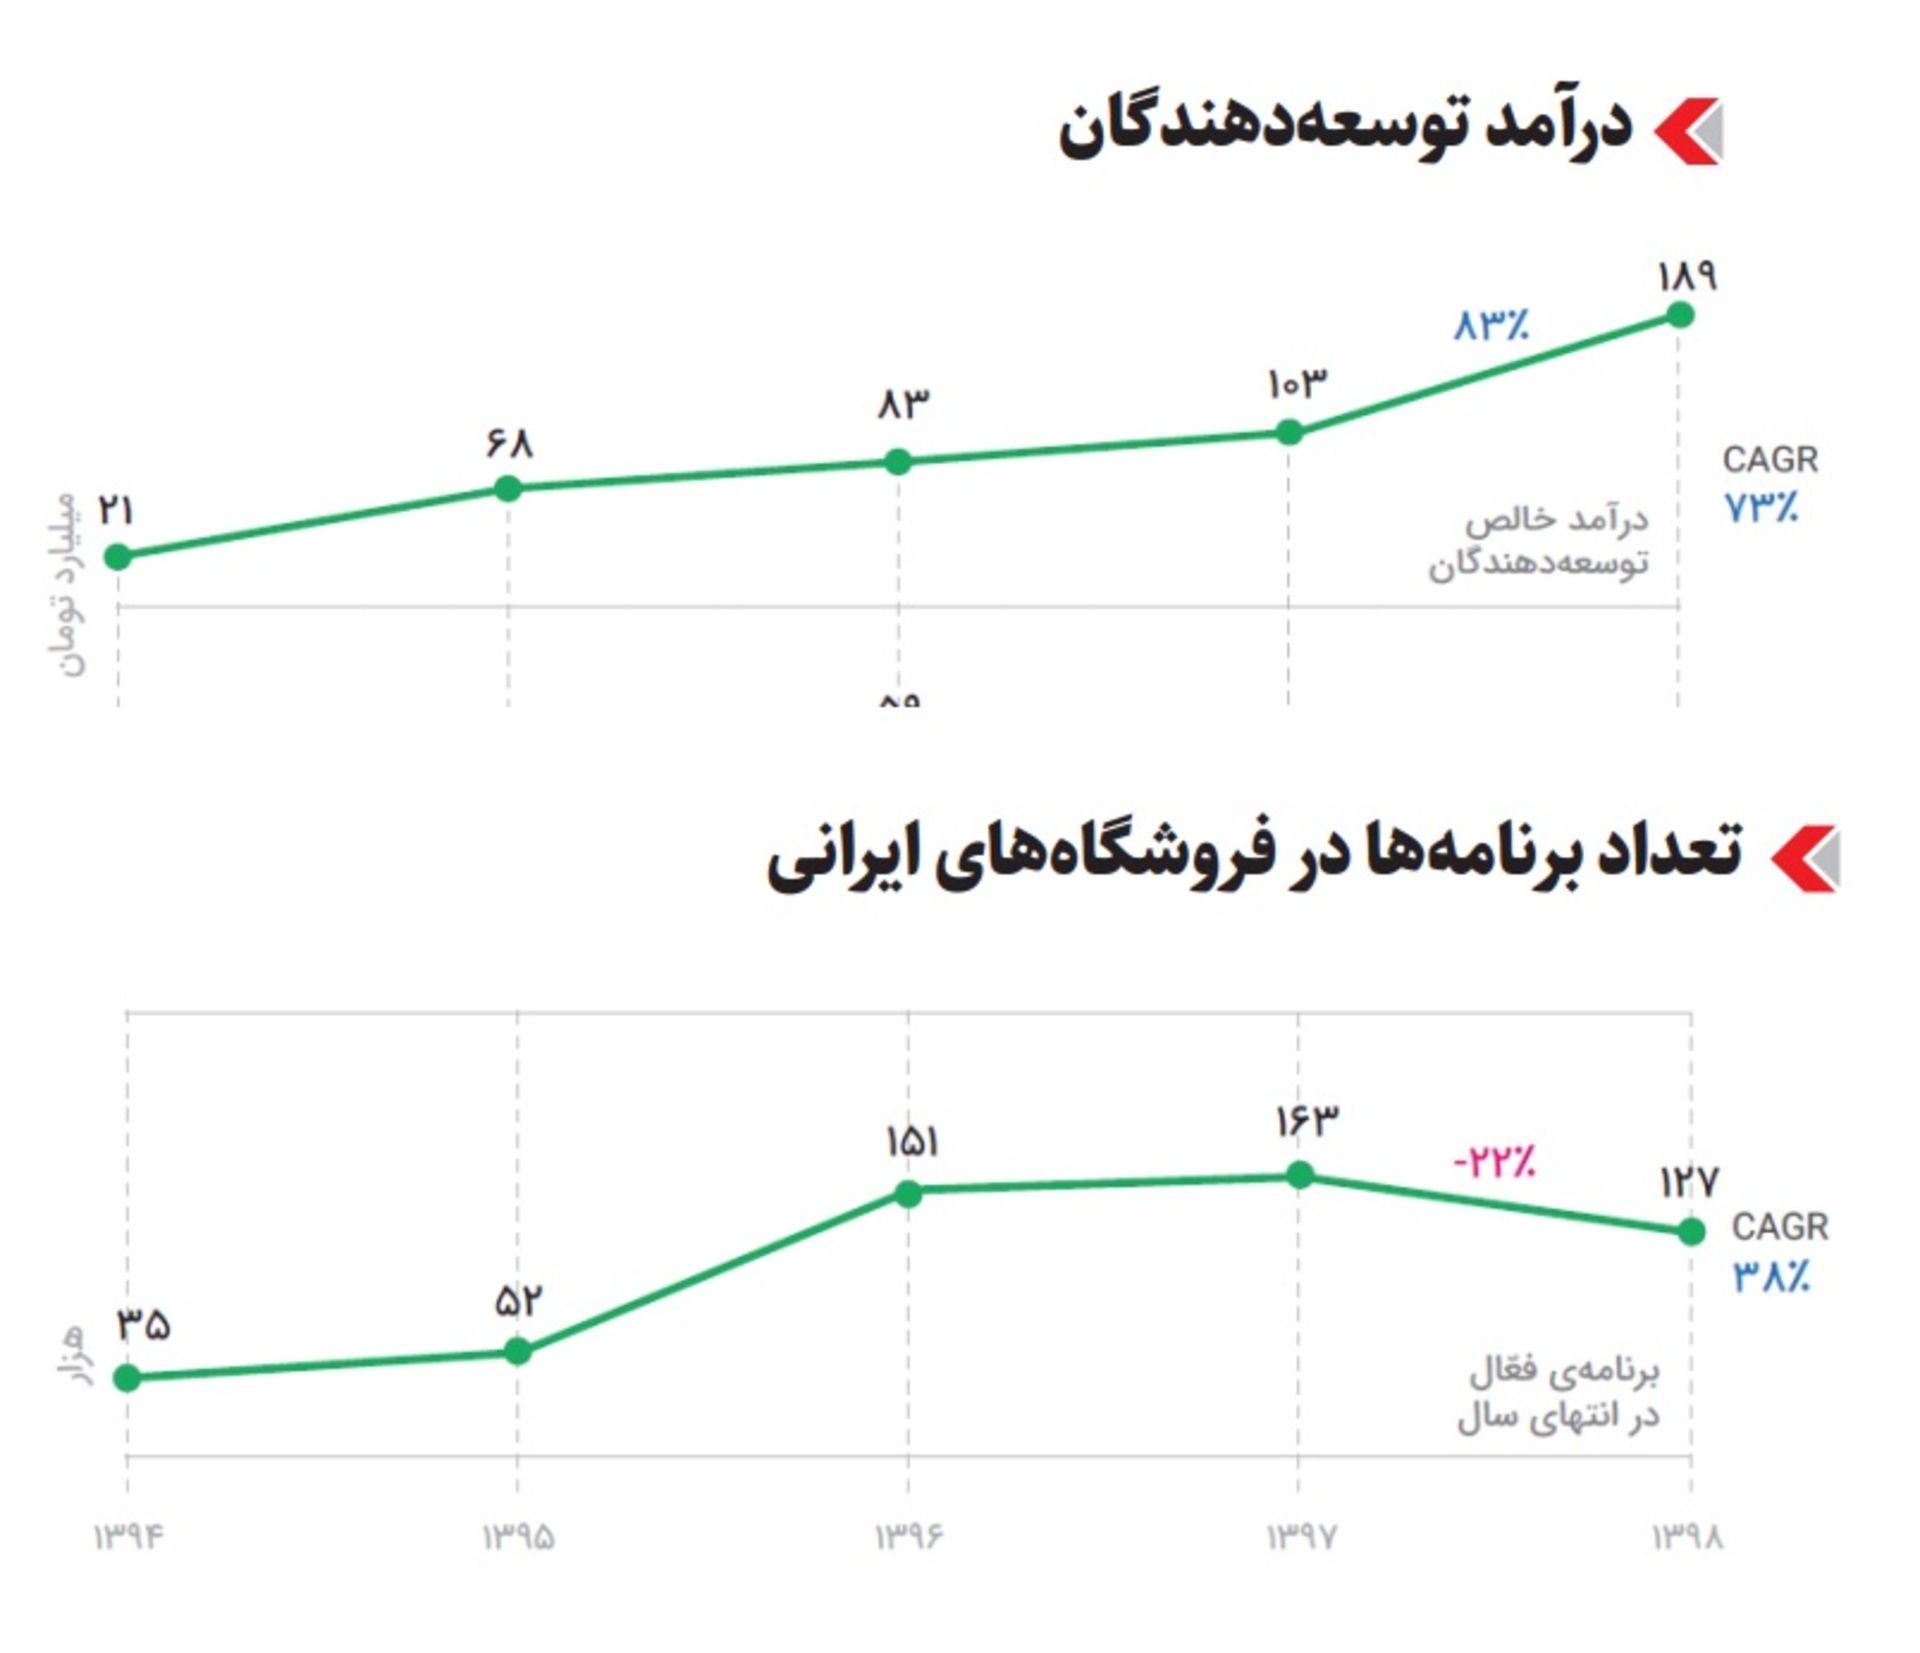 نمودار میزان درآمد و تعداد برنامه های فروشگاه اپلیکیشن ایرانی